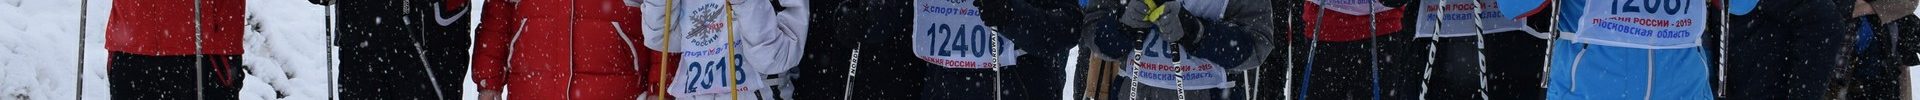 Лыжный переход «От храма к храму, от спорта к вере!» в Рогачевском благочинии стал рекордным по числу участников